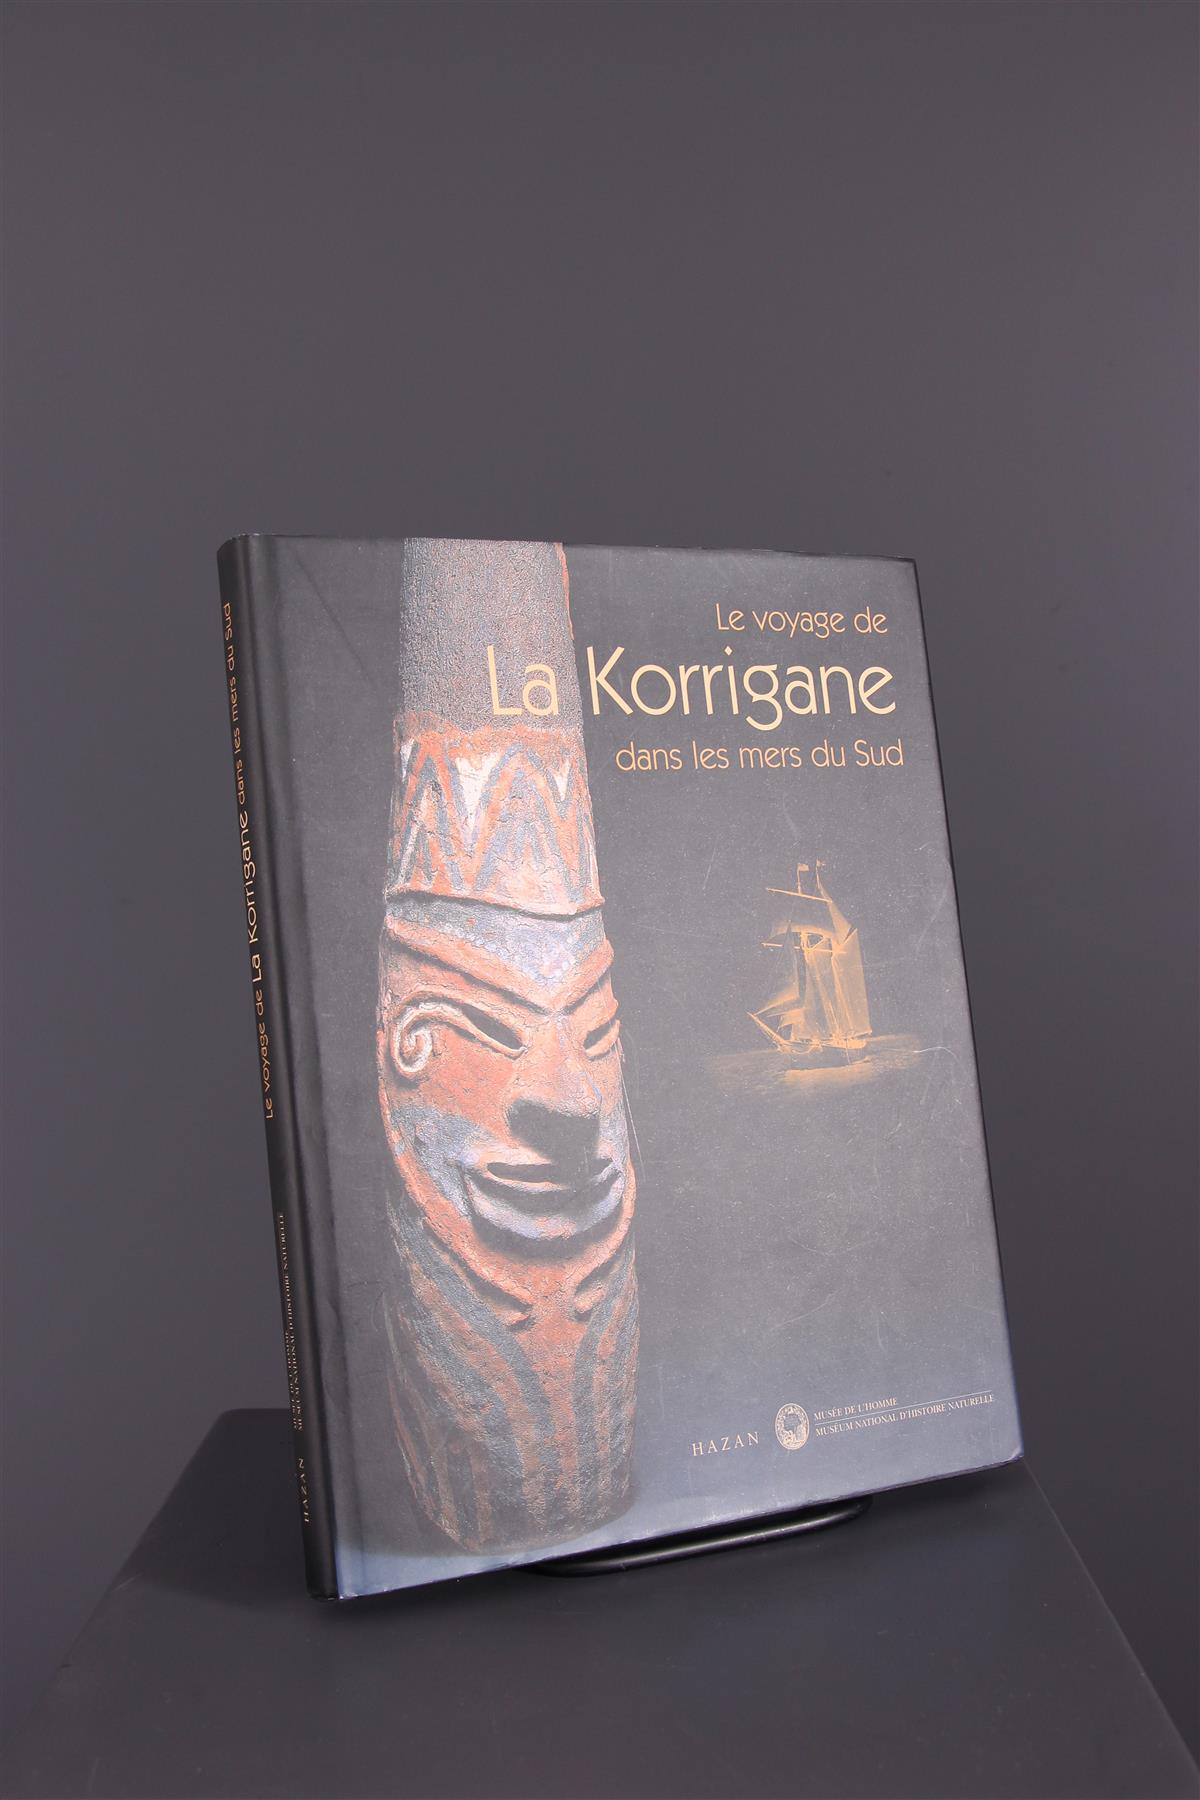 Le voyage de la Korrigane - Arte tribal africano